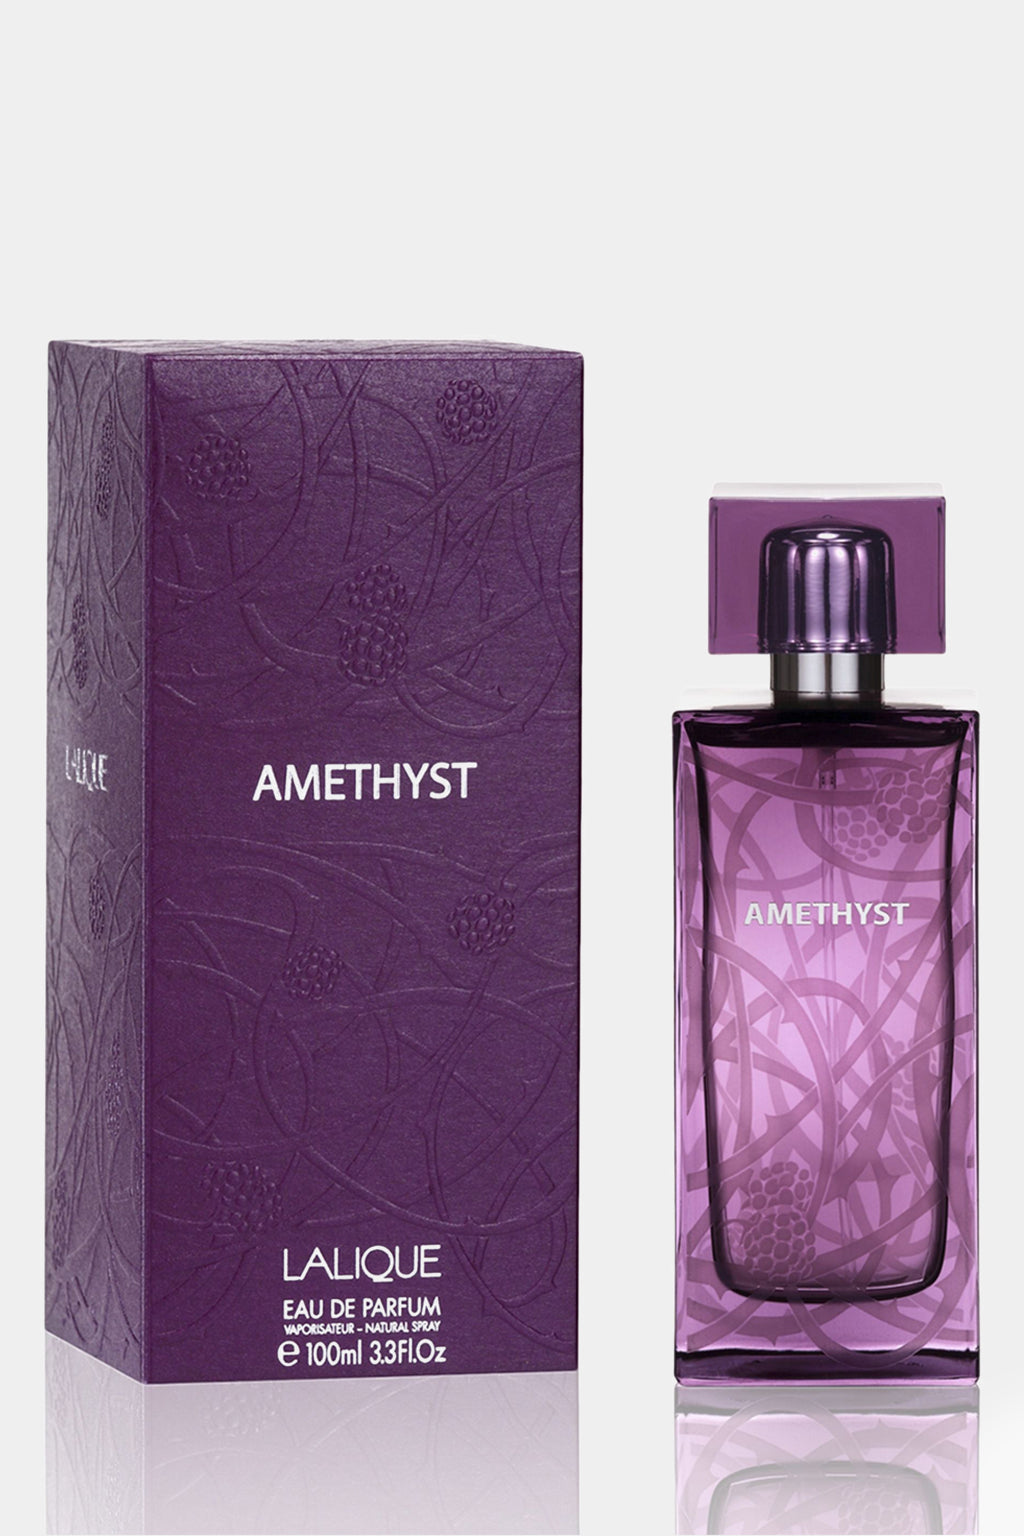 Lalique - Amethyst Eau de Parfum